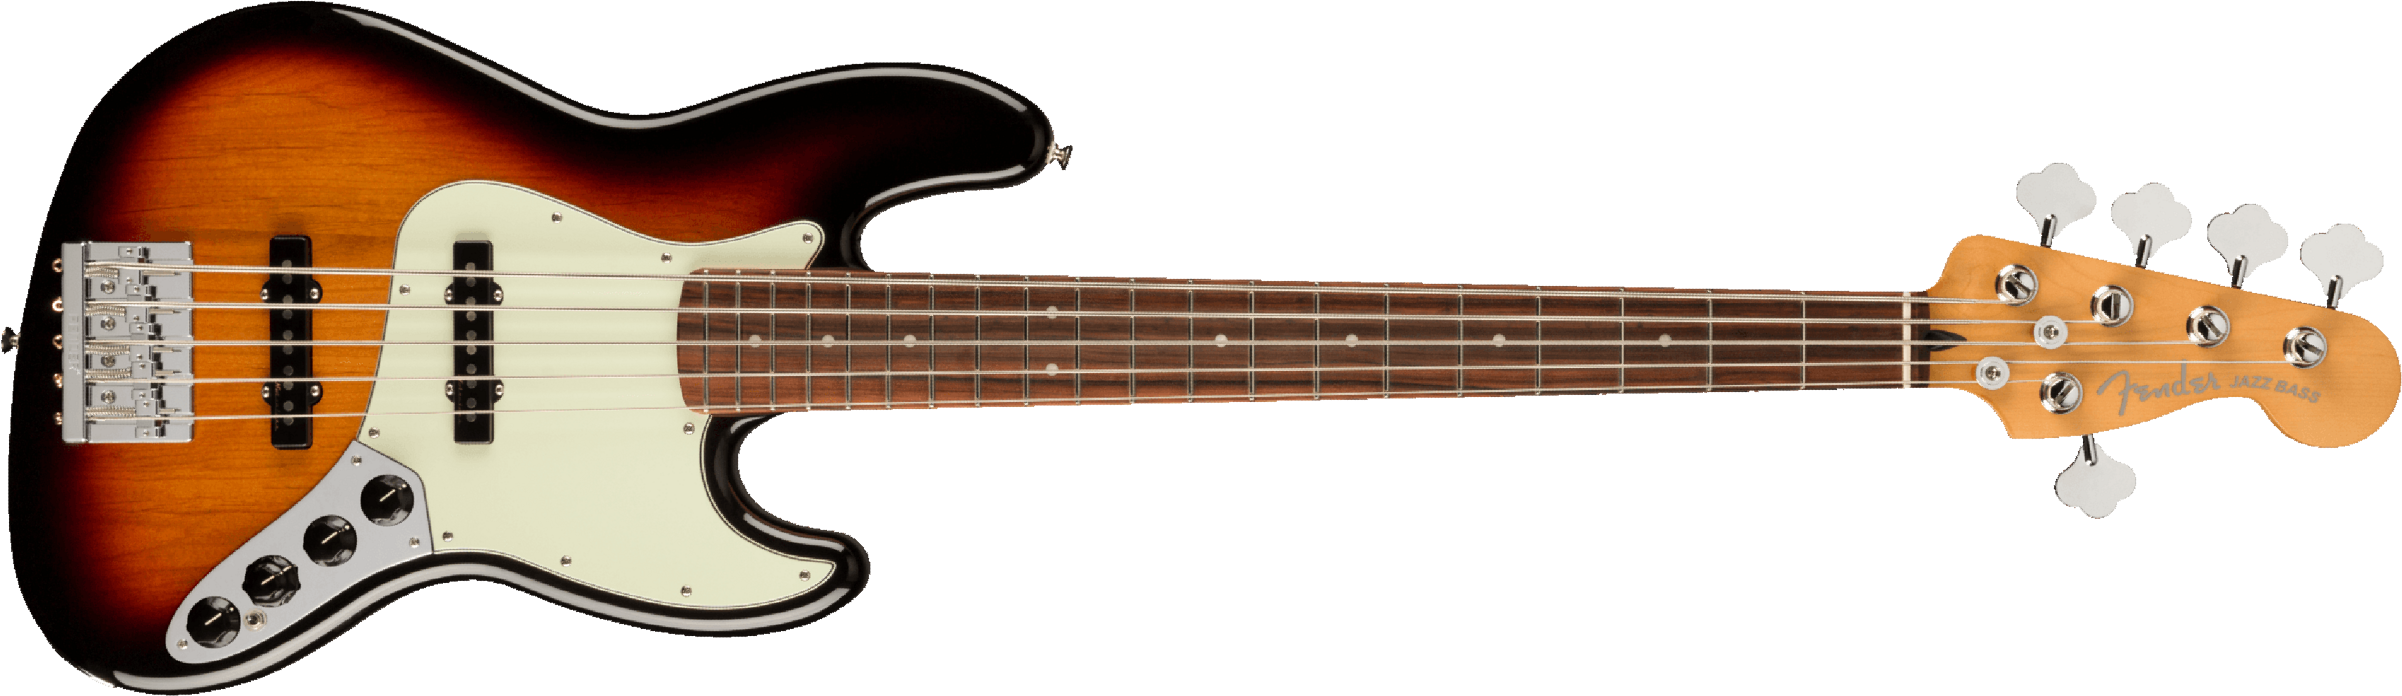 Fender Jazz Bass Player Plus V Mex 5c Active Pf - 3-color Sunburst - Bajo eléctrico de cuerpo sólido - Main picture